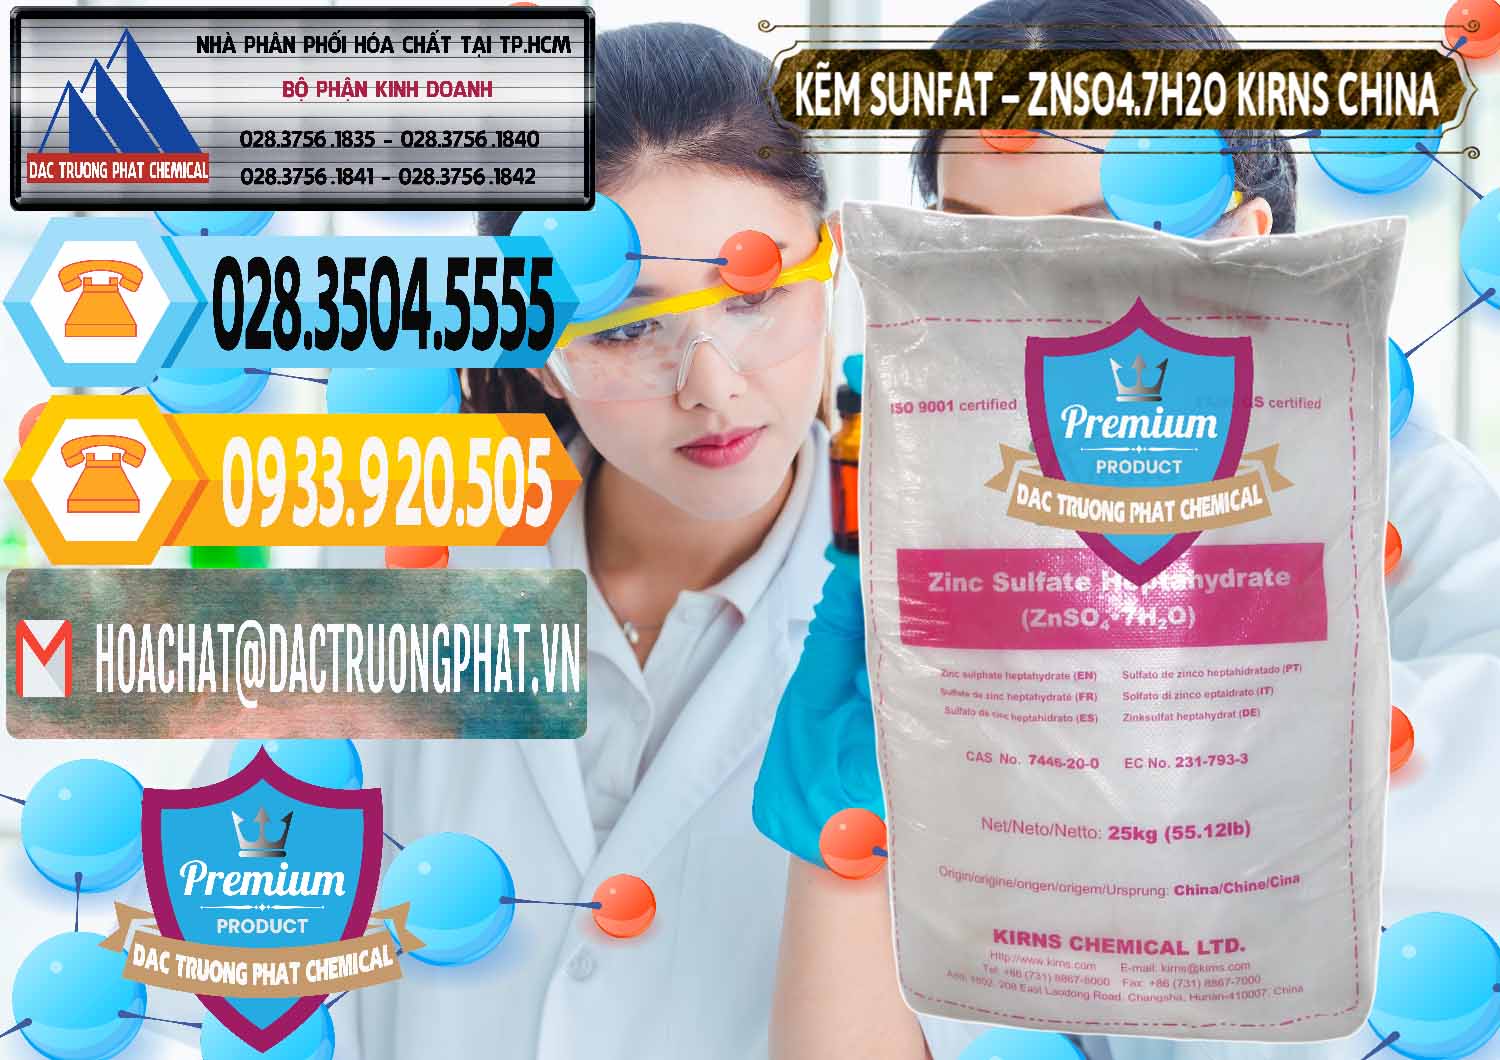 Đơn vị nhập khẩu & bán Kẽm Sunfat – ZNSO4.7H2O Kirns Trung Quốc China - 0089 - Chuyên cung cấp & phân phối hóa chất tại TP.HCM - hoachattayrua.net